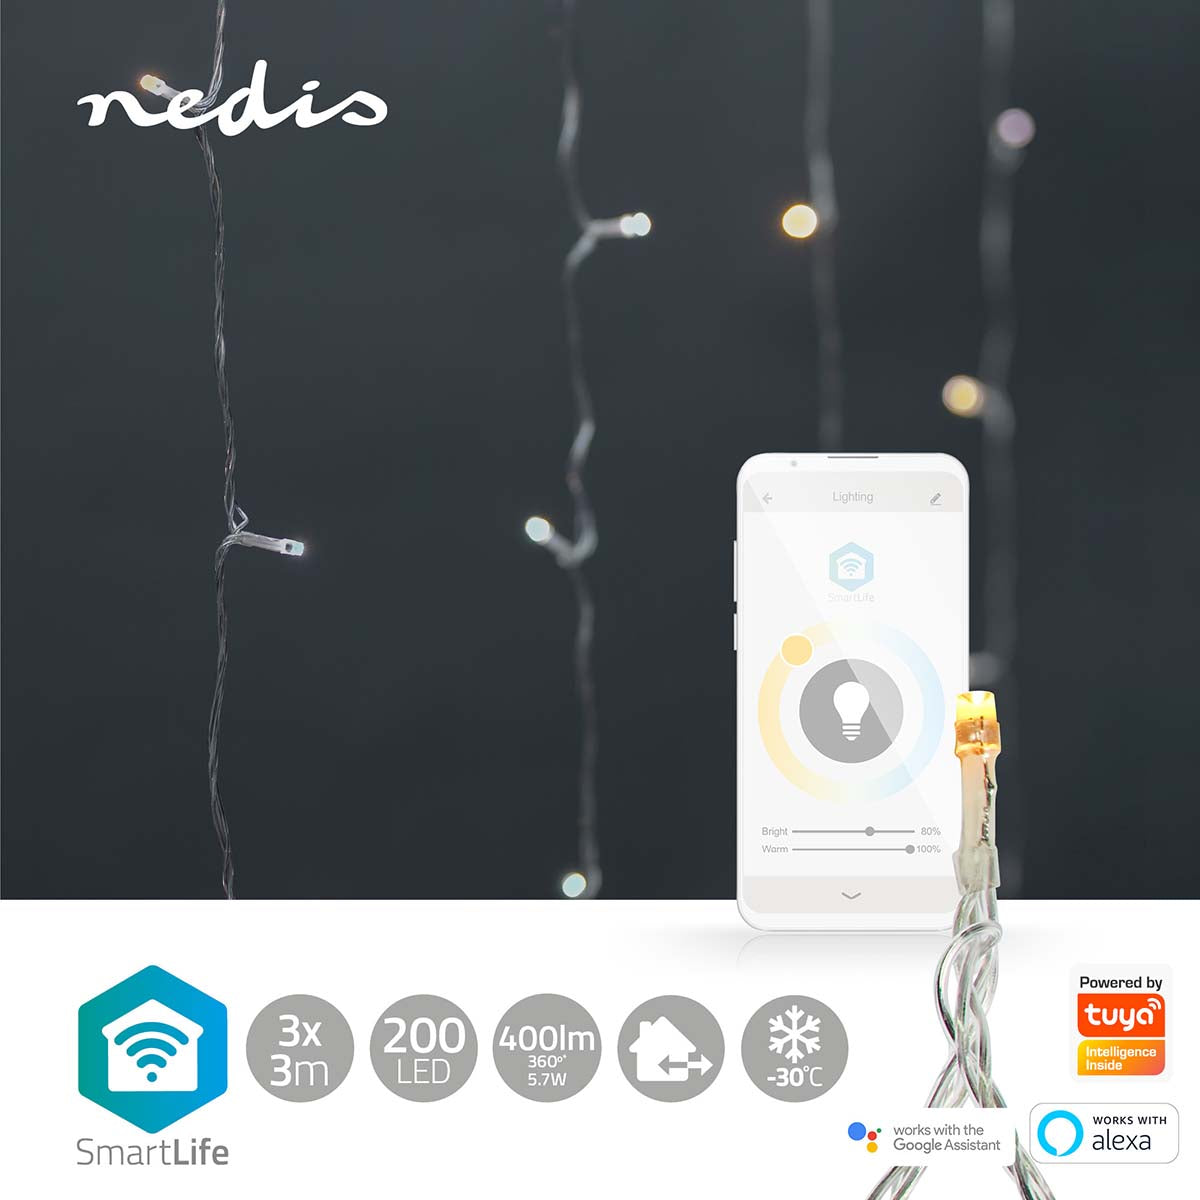 Cortina Nedis Wi-Fi Branco Quente e Frio: iluminação inteligente de Natal. Com 200 LEDs em 3m, crie uma atmosfera única e personalizada com facilidade.